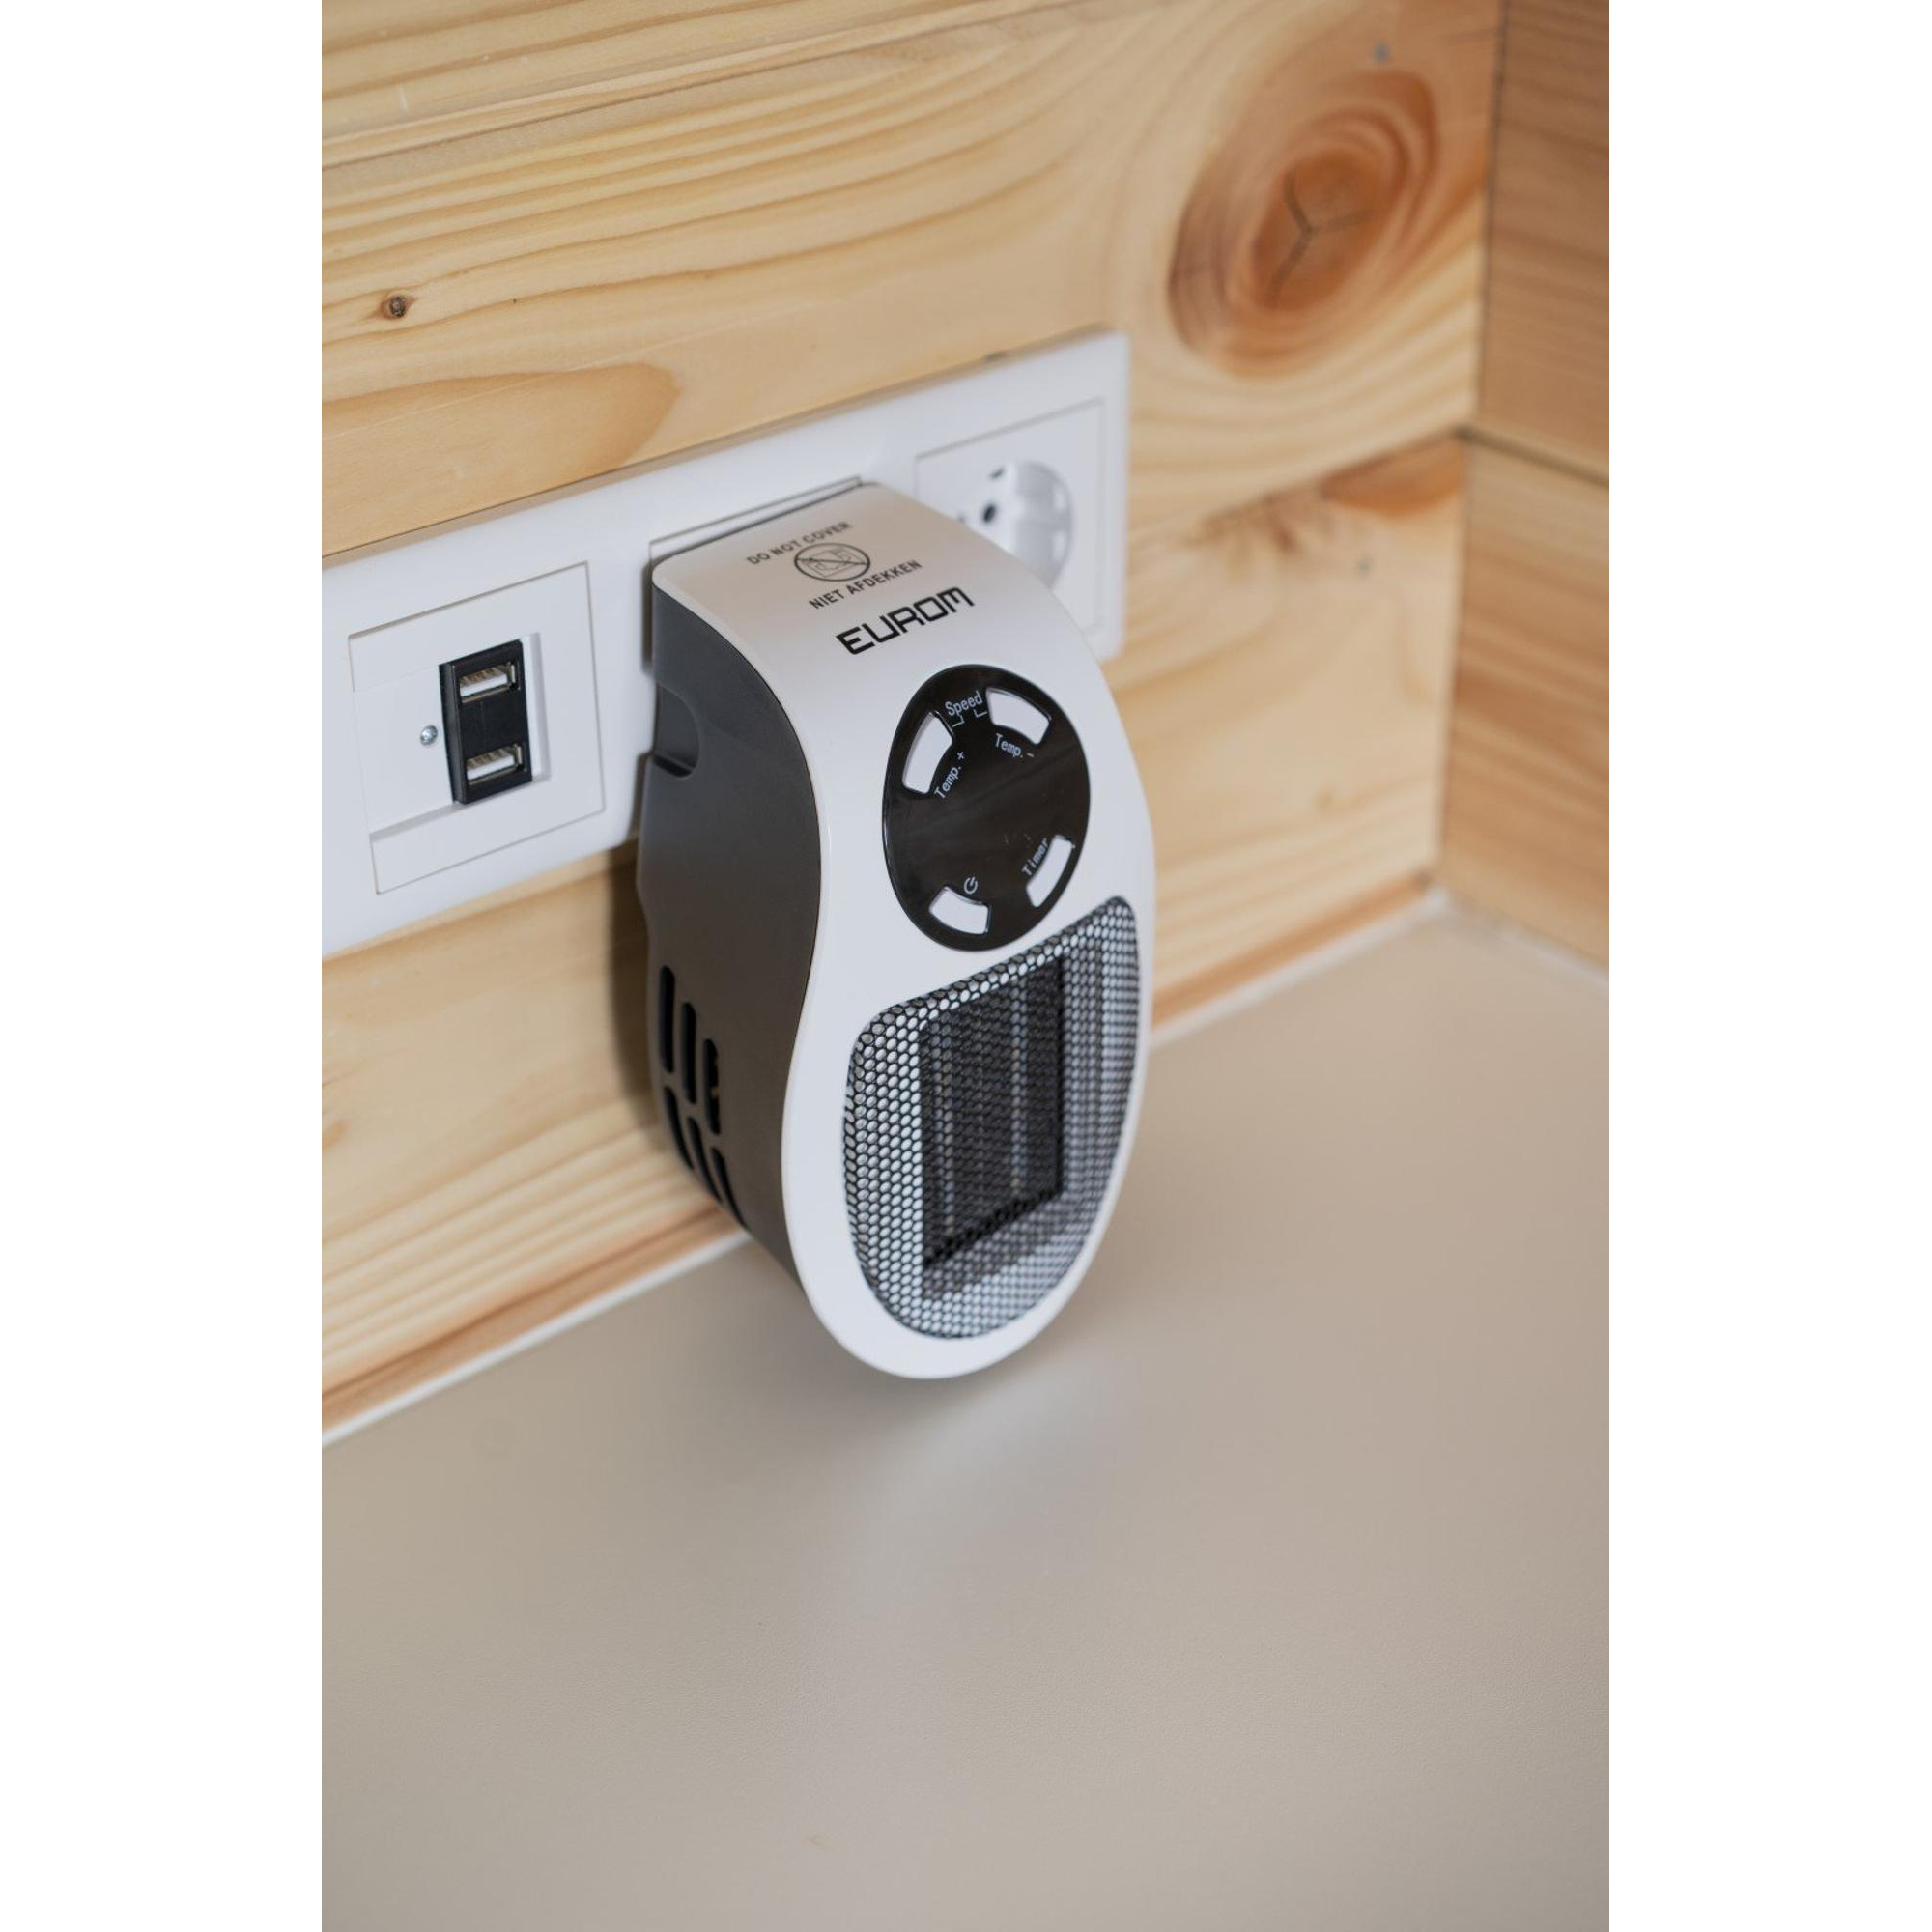 Stopcontact kacheltje / Plug-in heater